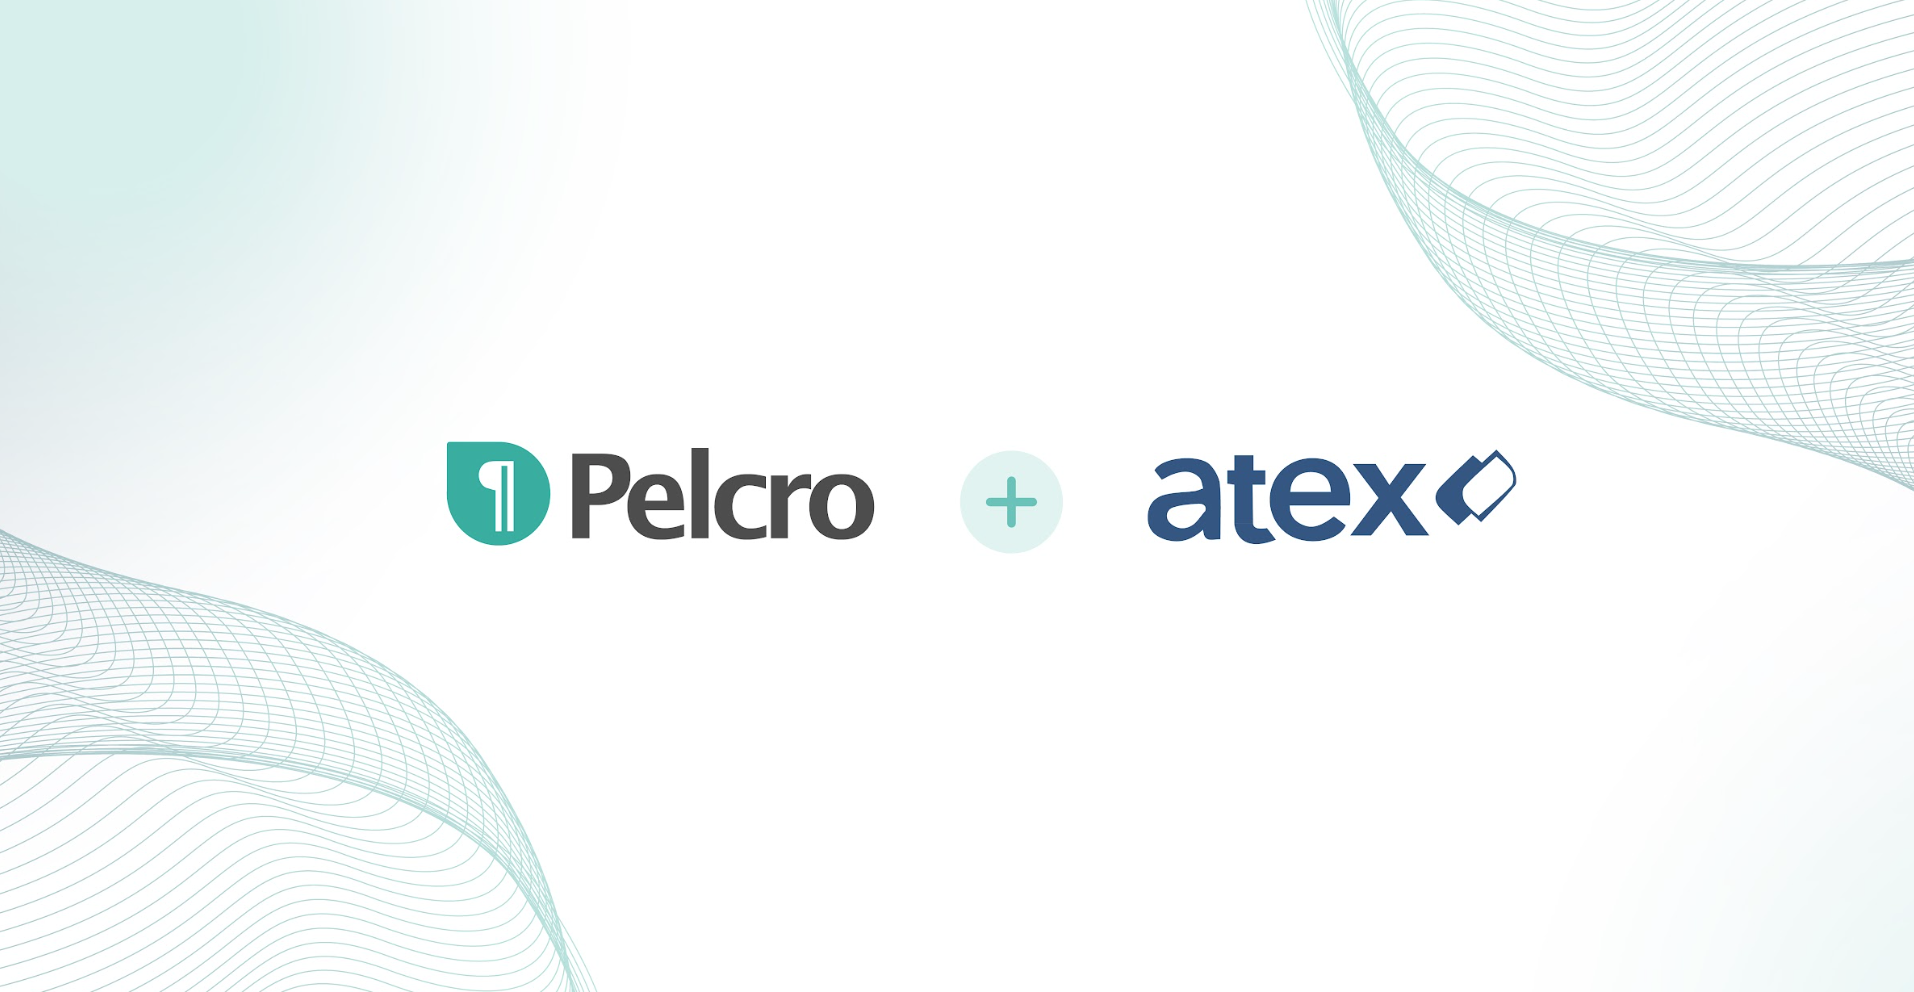 Pelcro and Atex partnership